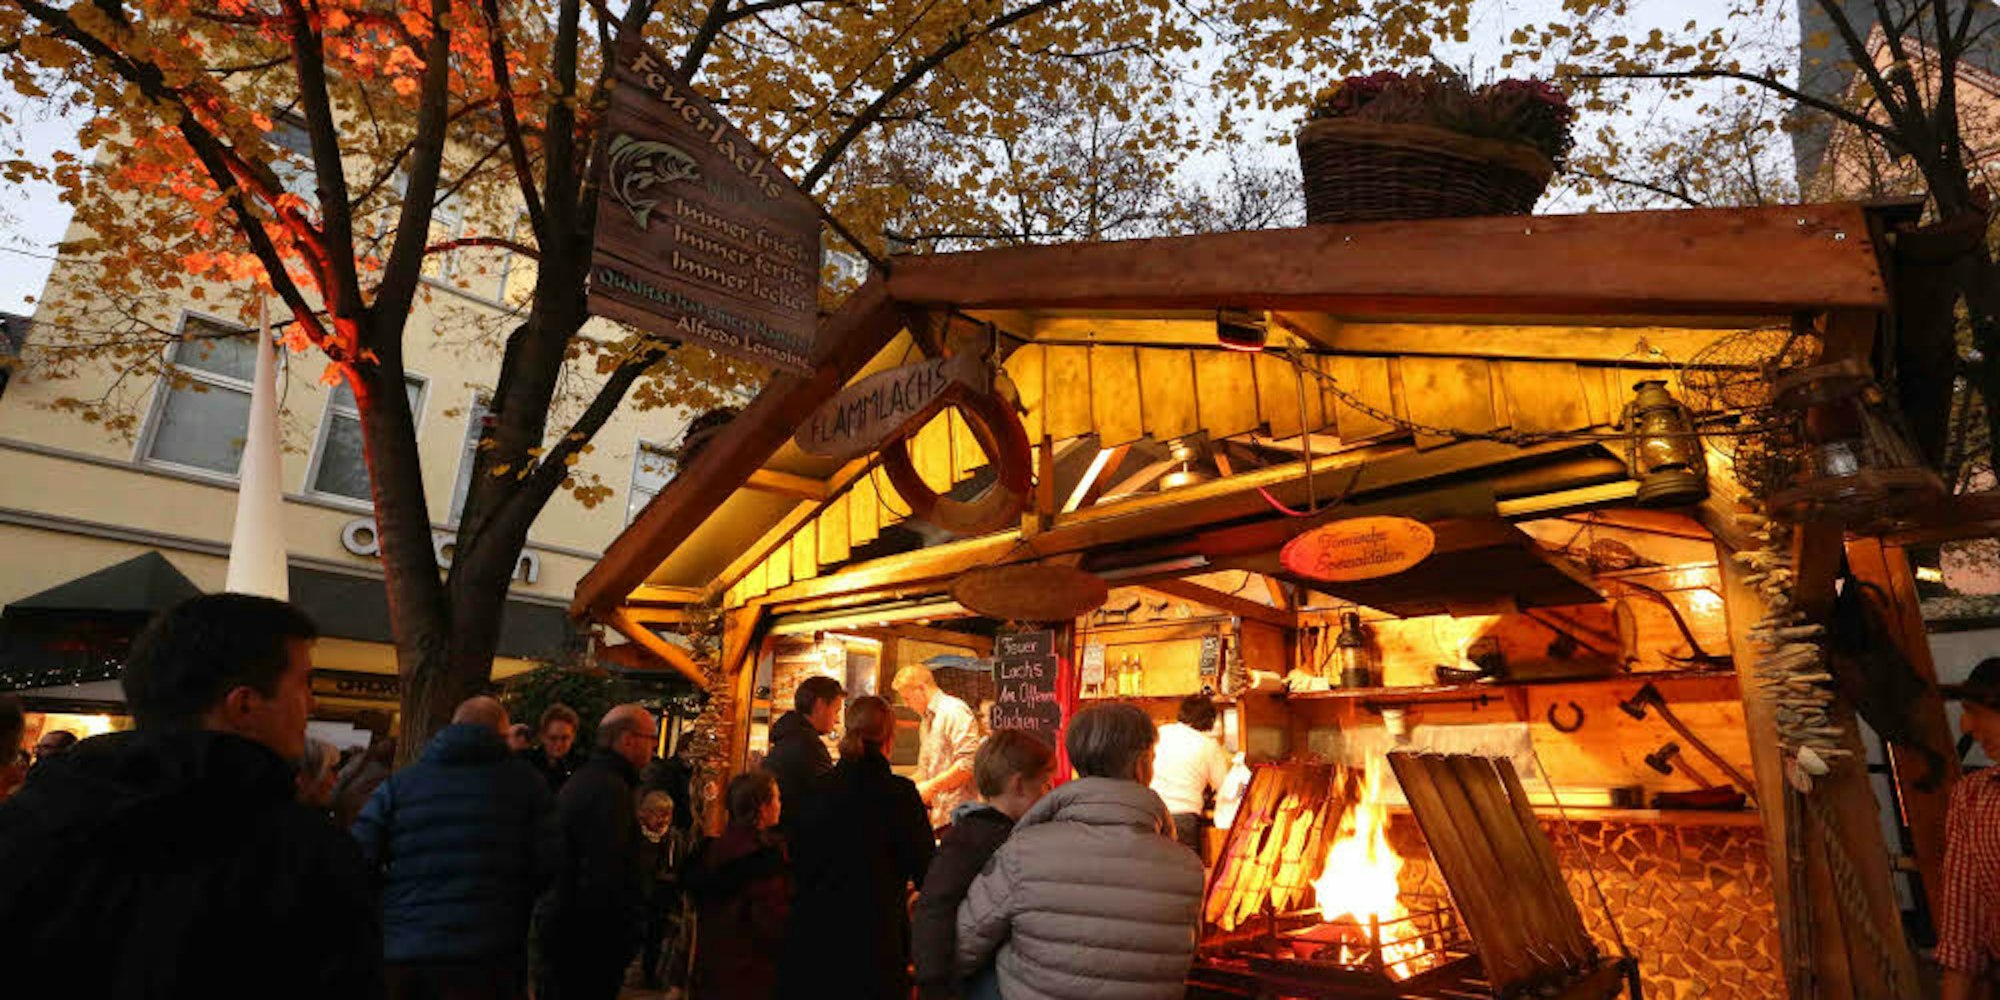 Flammlachs und Glühwein verkauften sich auch bei lauen Herbsttemperaturen gut. Viele schätzen die besondere Atmosphäre des Marktes.